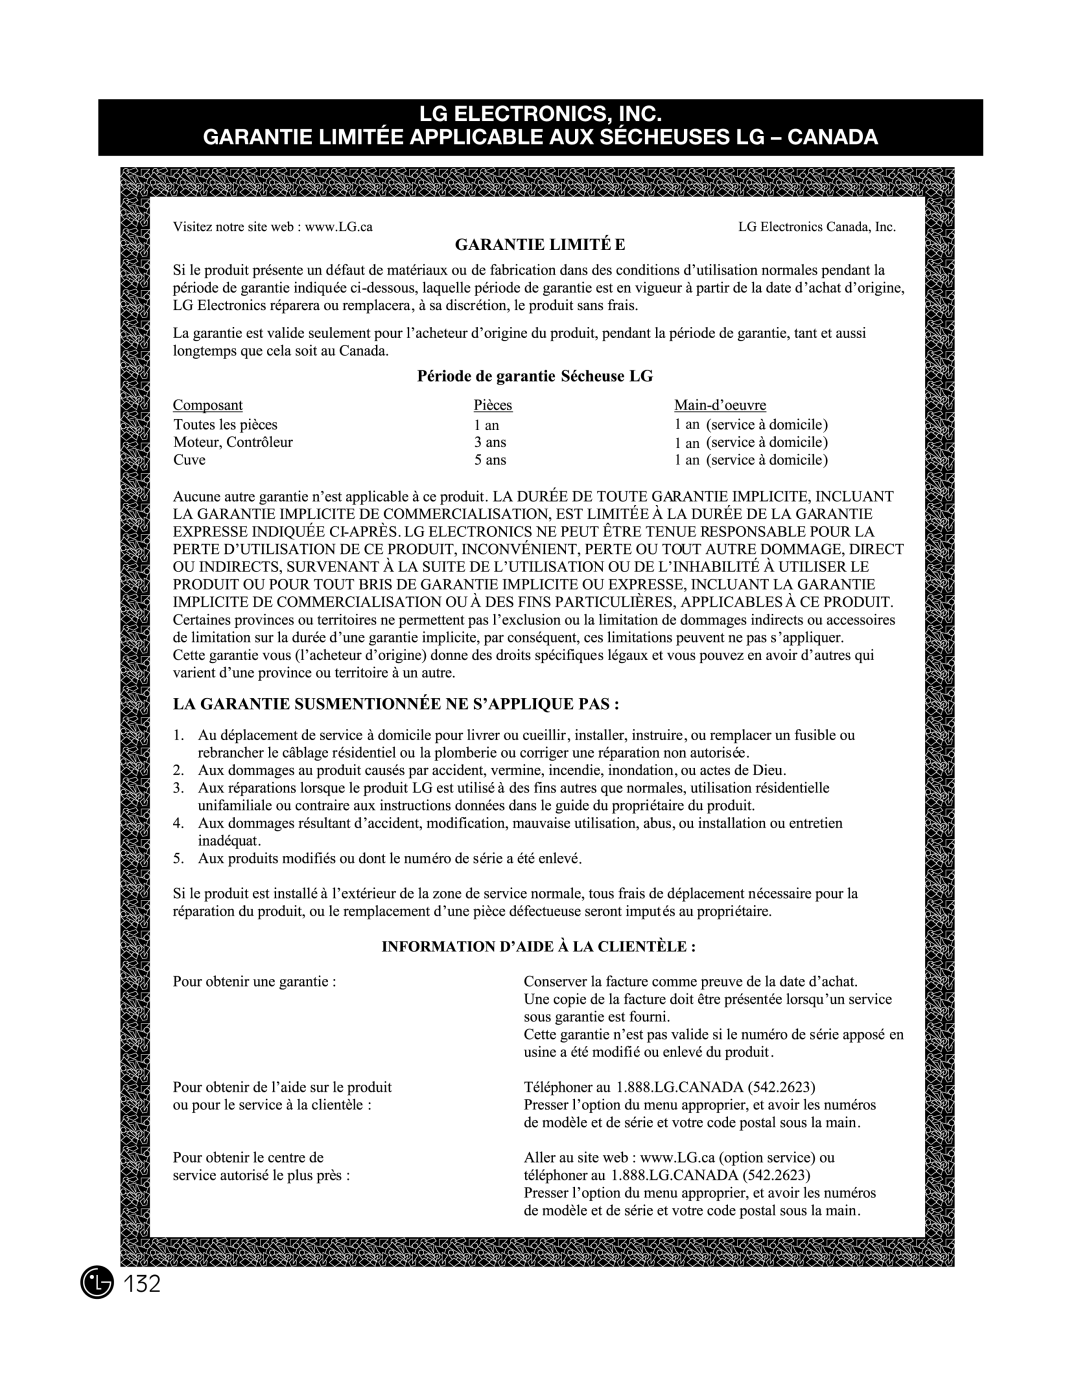 LG Electronics P154 manual Lg Electronics, Inc, Garantie Limitée Applicable Aux Sécheuses Lg - Canada, 1 an 